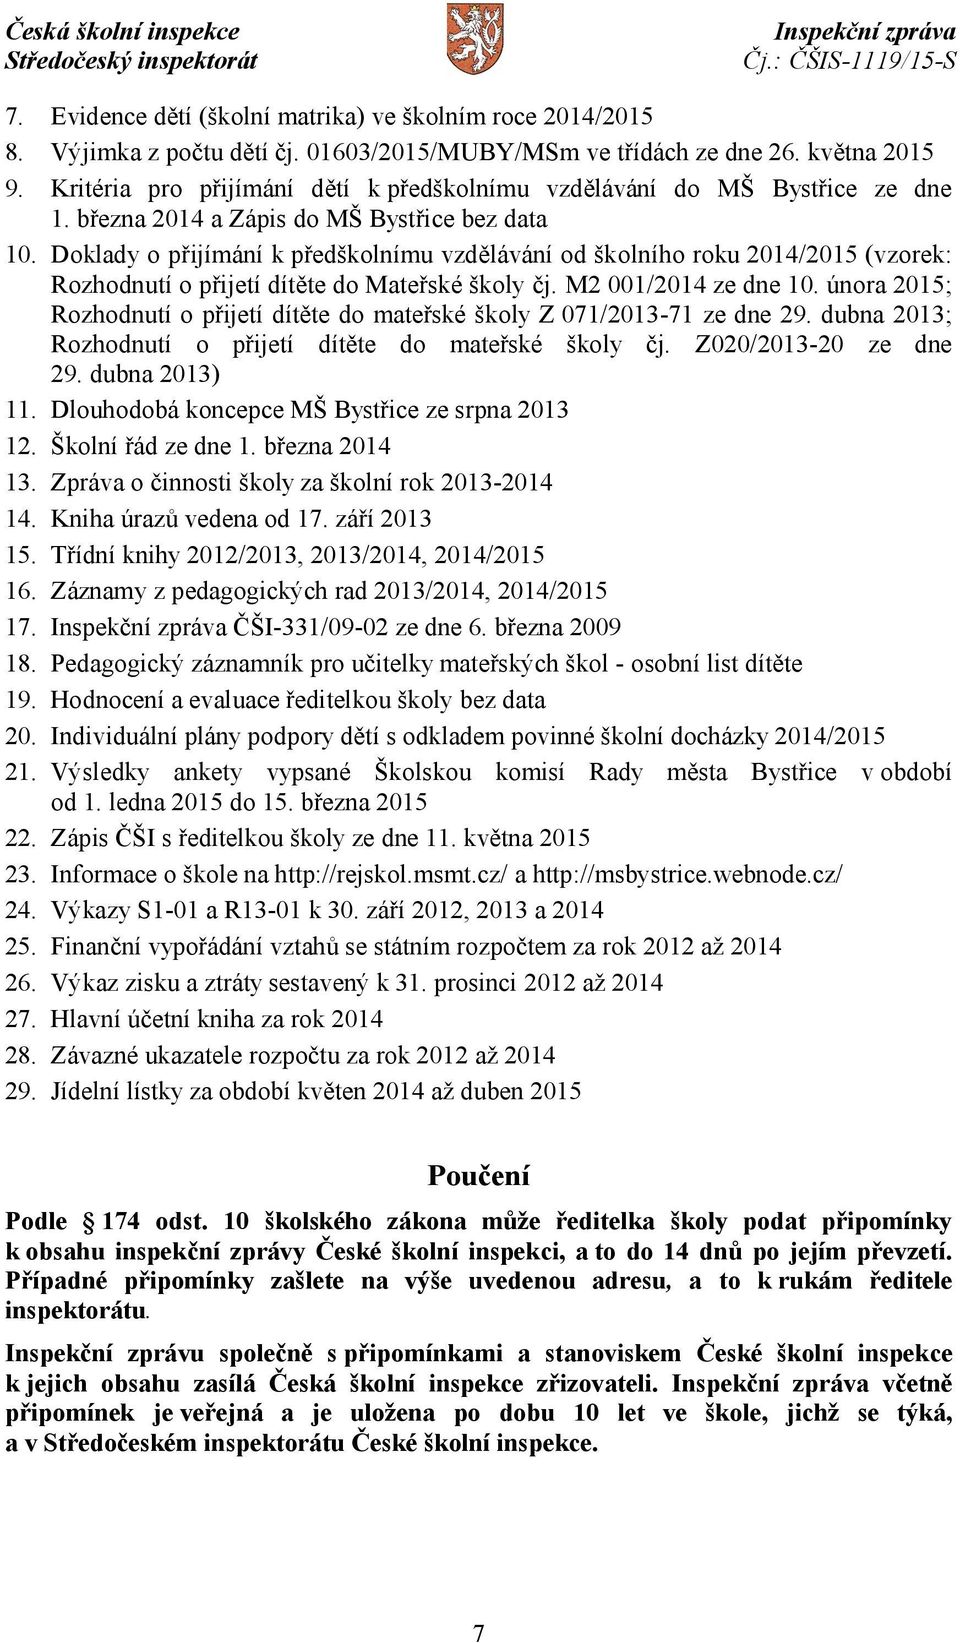 Doklady o přijímání k předškolnímu vzdělávání od školního roku 2014/2015 (vzorek: Rozhodnutí o přijetí dítěte do Mateřské školy čj. M2 001/2014 ze dne 10.